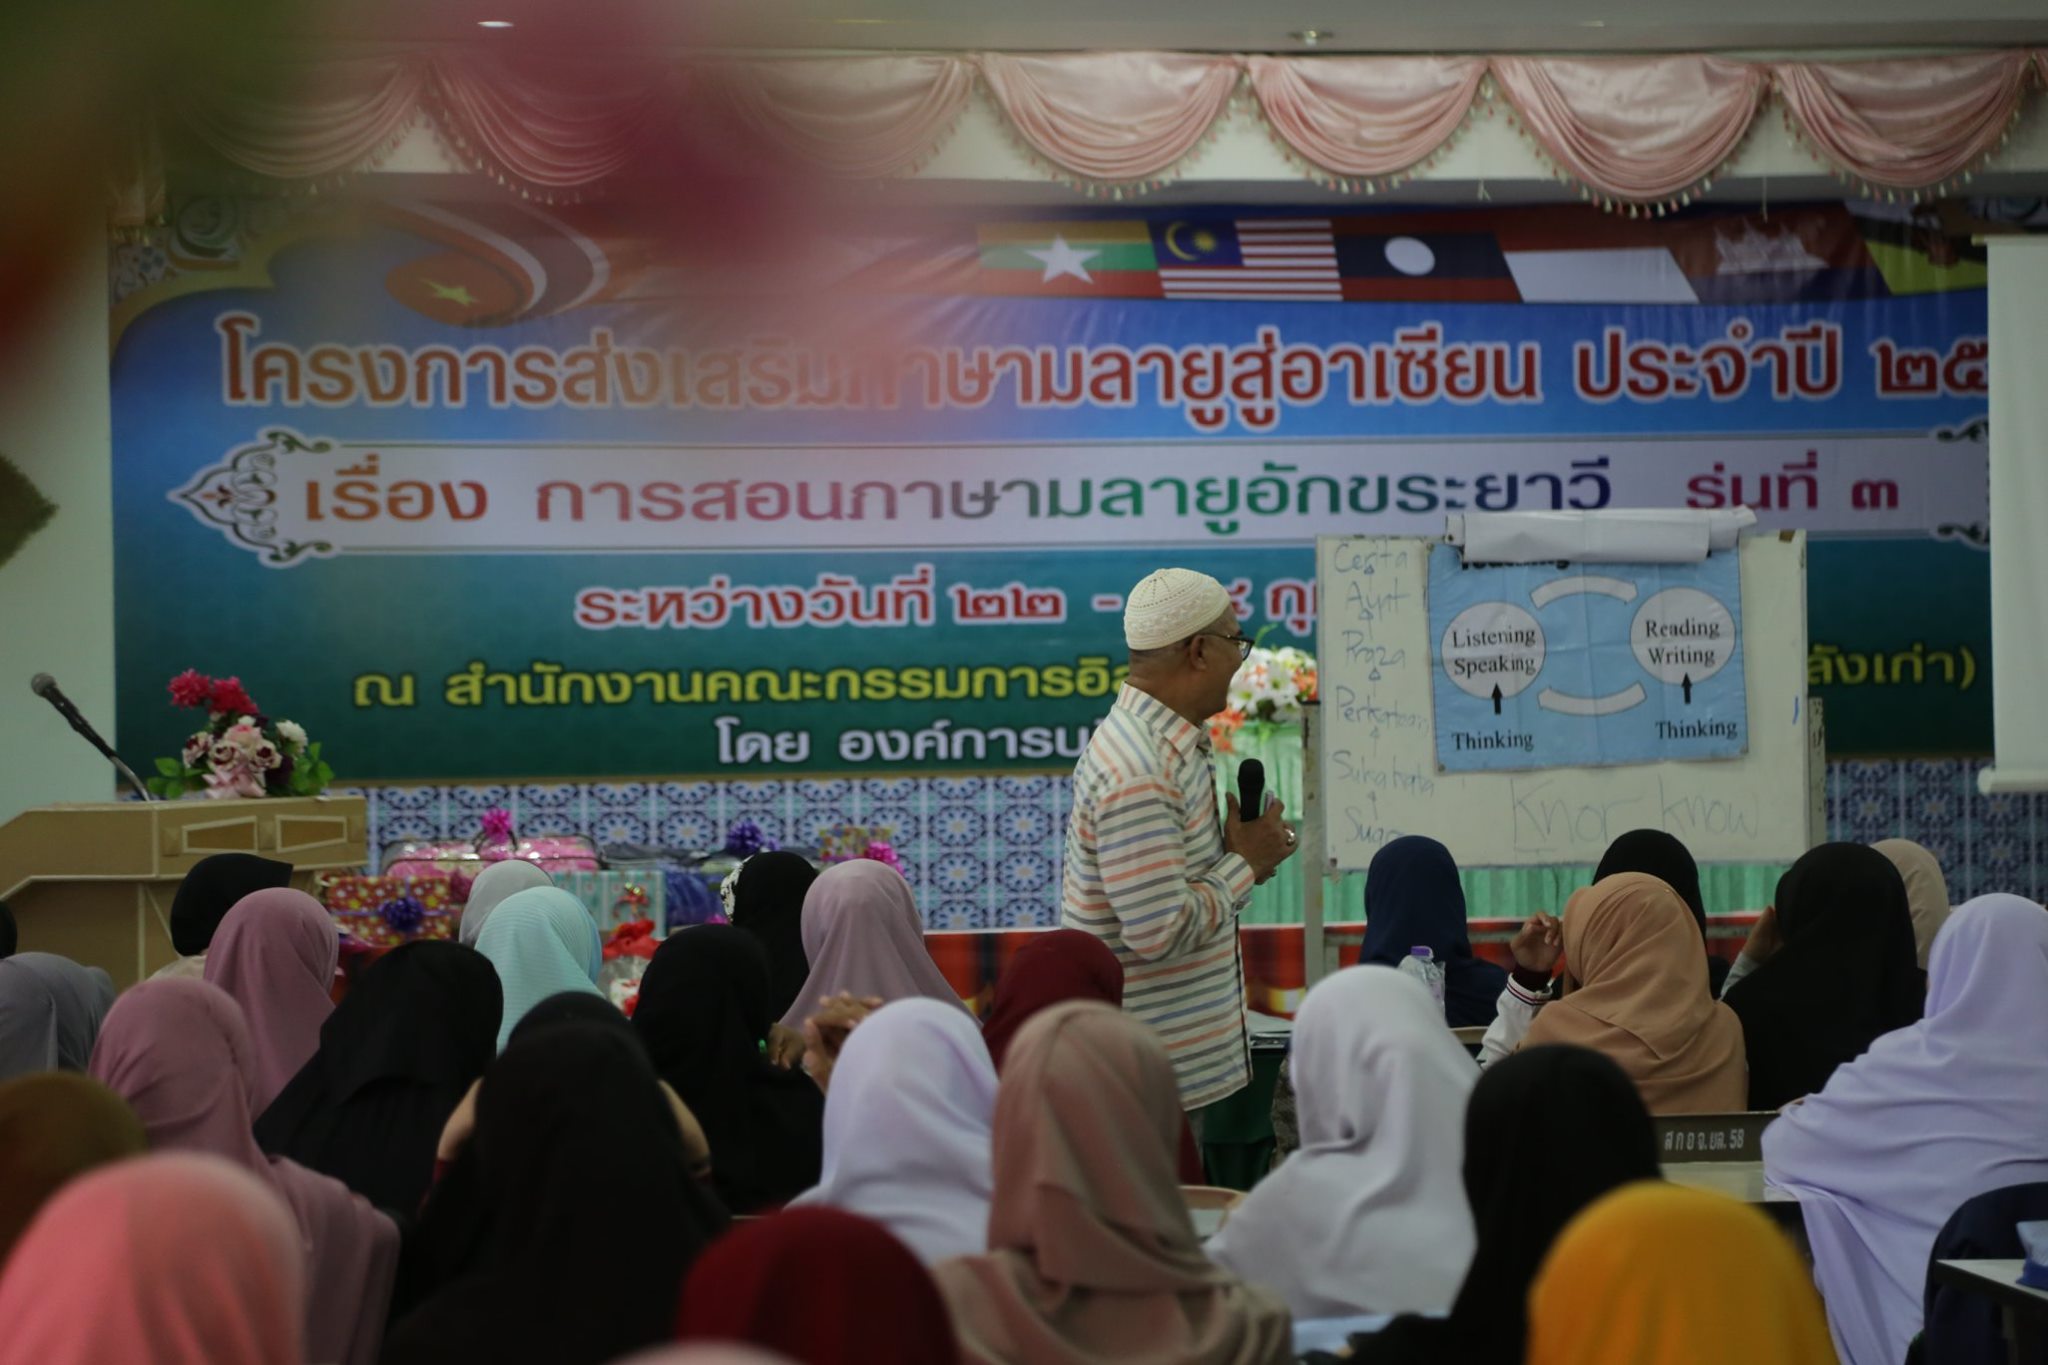 พิธีปิดโครงการส่งเสริมภาษามลายูสู่อาเซียน ประจำปี 2563 ” เรื่อง “ การสอนภาษามลายูอักขระยาวี” รุ่นที่ 3 ระหว่างวันที่ 22 - 24 กุมภาพันธ์ 2563